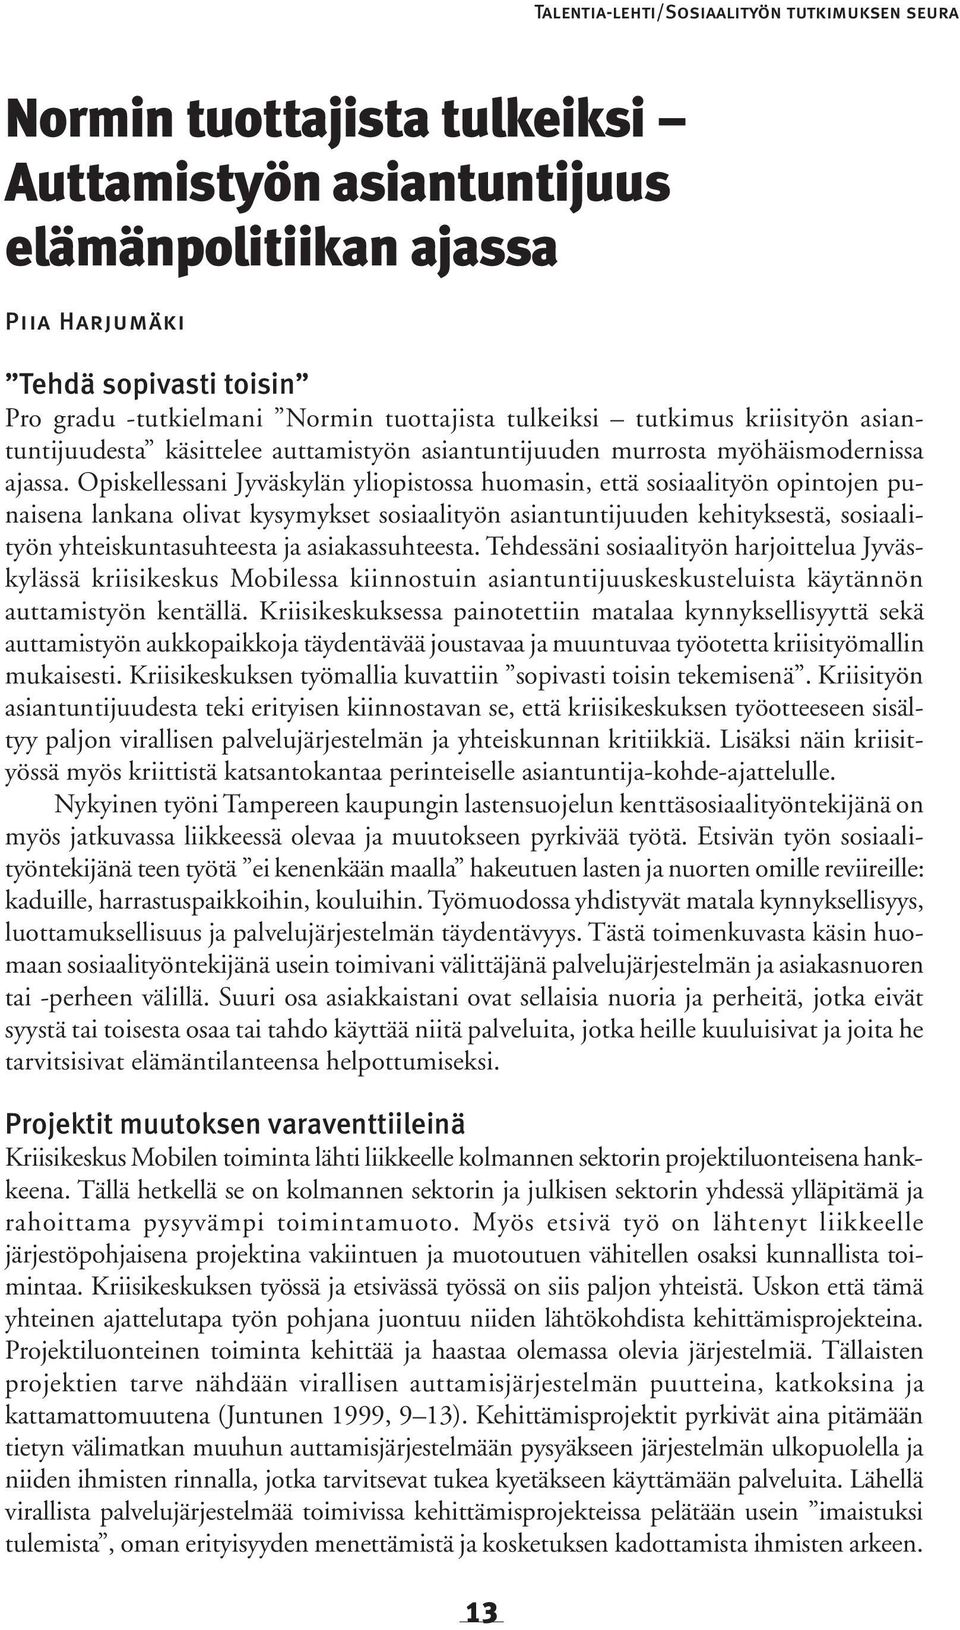 Opiskellessani Jyväskylän yliopistossa huomasin, että sosiaalityön opintojen punaisena lankana olivat kysymykset sosiaalityön asiantuntijuuden kehityksestä, sosiaalityön yhteiskuntasuhteesta ja